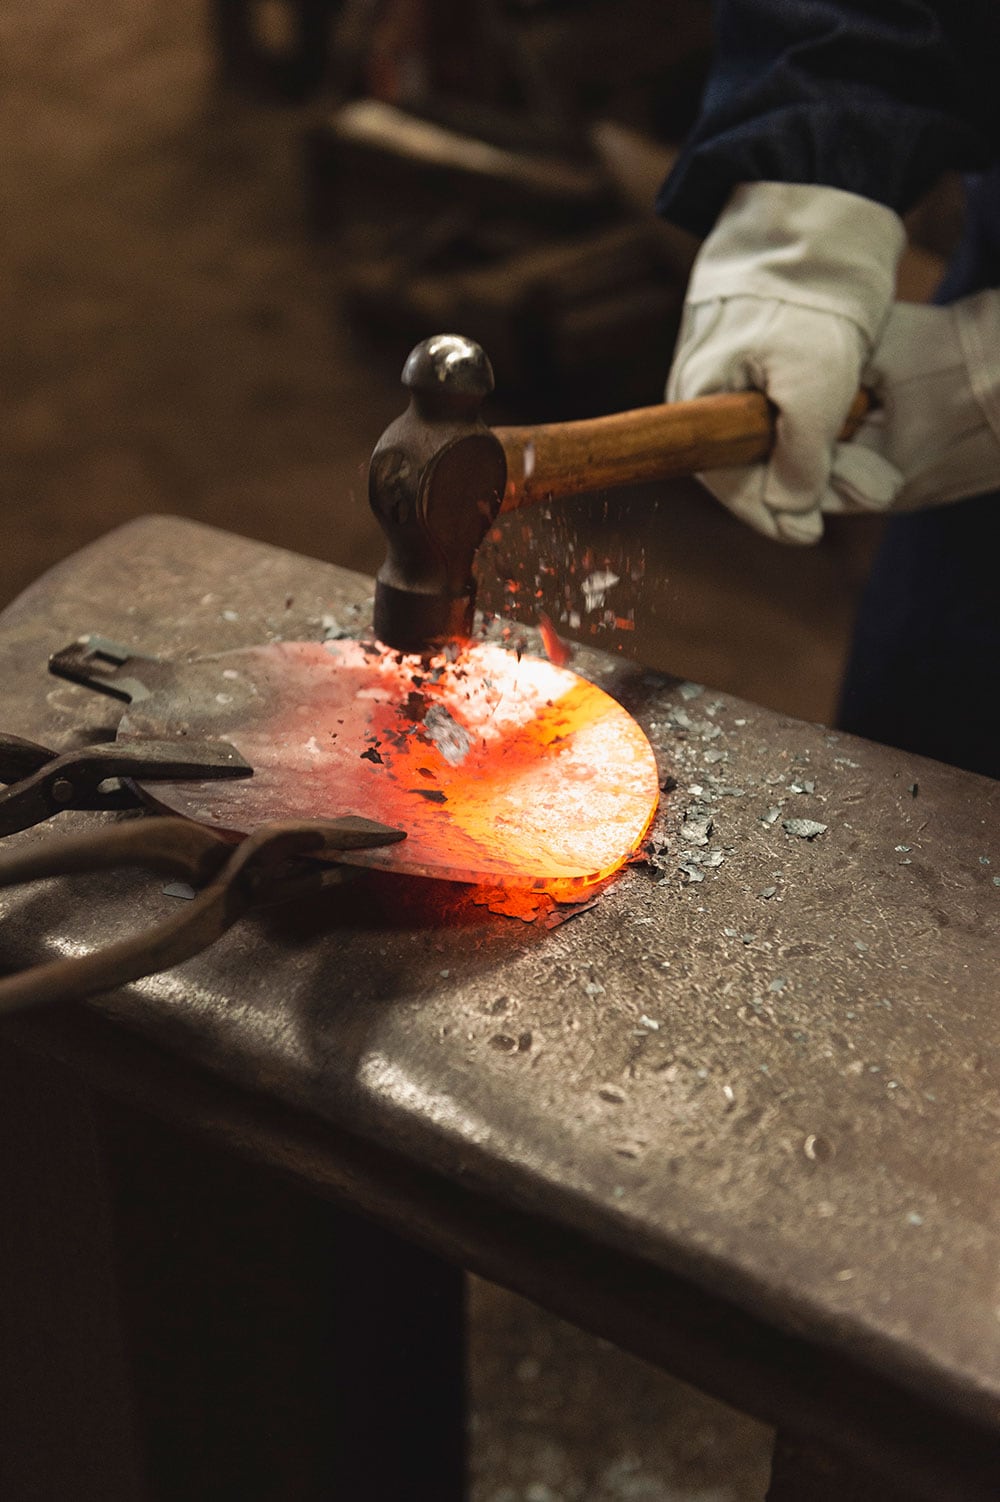 1,000度以上の高温に熱した金属をハンマーなどで叩いて成形する自由鍛造体験ができる。https://cocinero.jp/